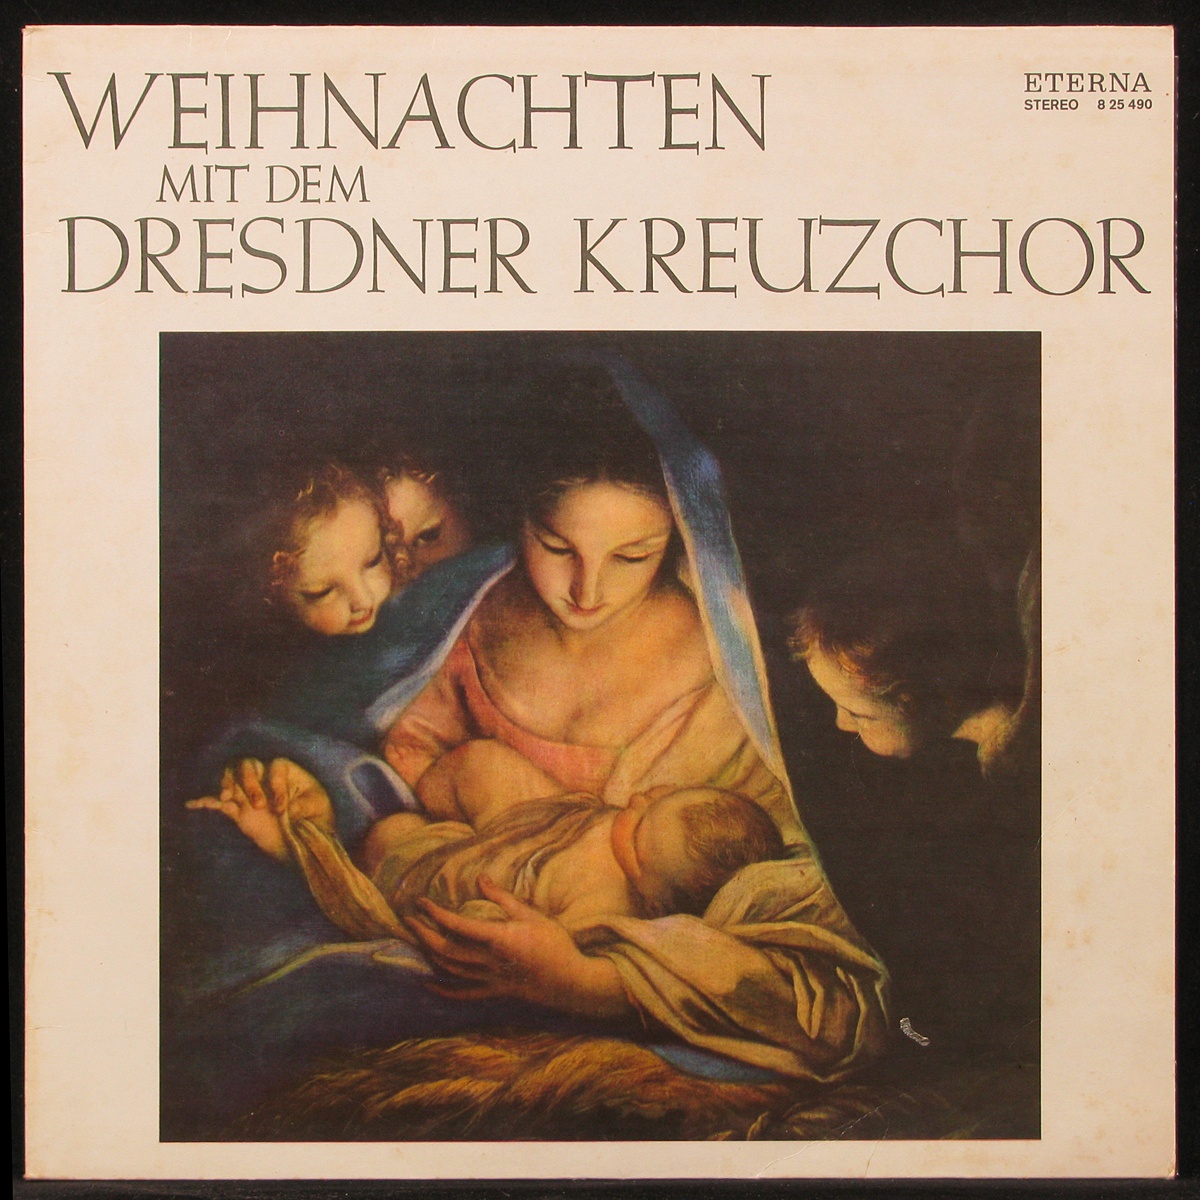 LP Rudolf Mauersberger / Hans Otto / Dresdner Philharmonie Orchestra — Weihnachten Mit Dem Dresdner Kreuzchor фото